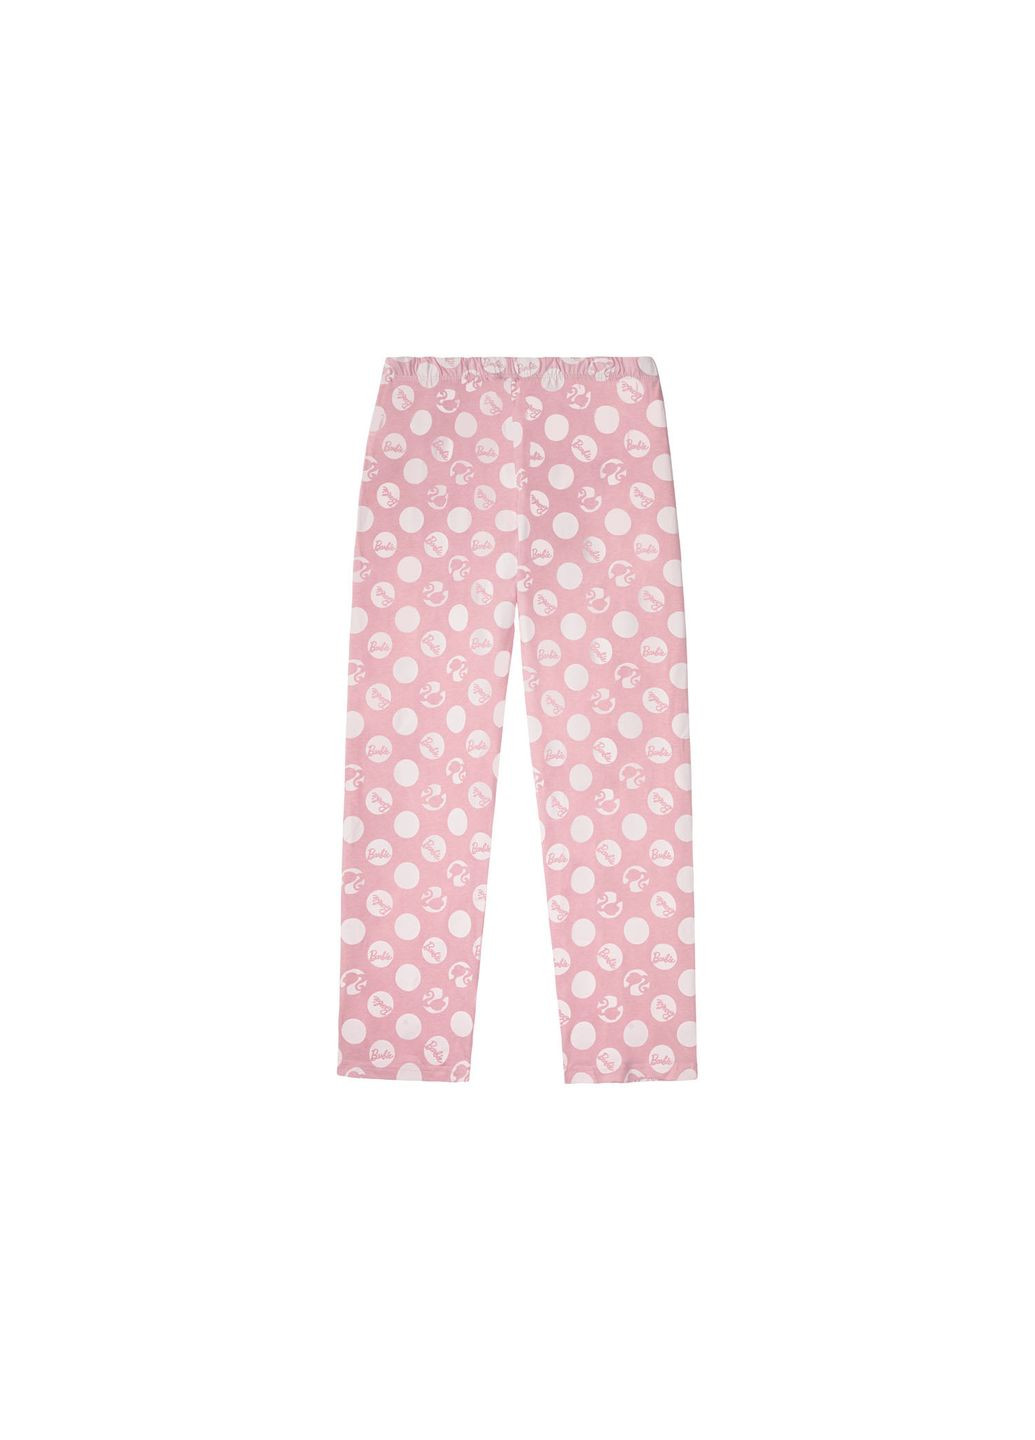 Розовая пижама (лонгслив и штаны) для женщины barbie 369981/1 Disney